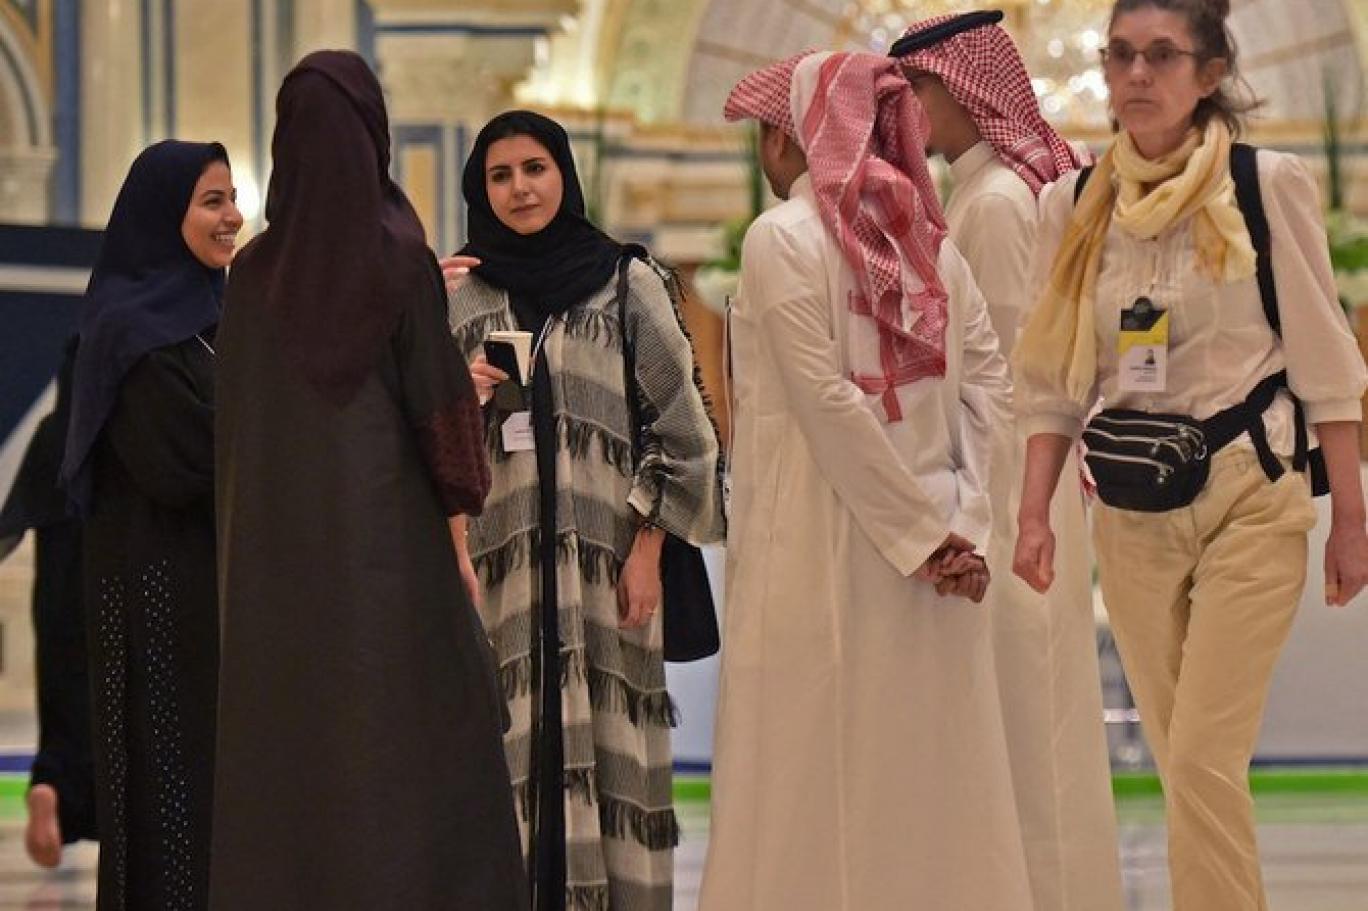 شهد السعودية تغييراً واسعاً على المستوى الاجتماعي خلال السنوات الماضية (أ ف ب)